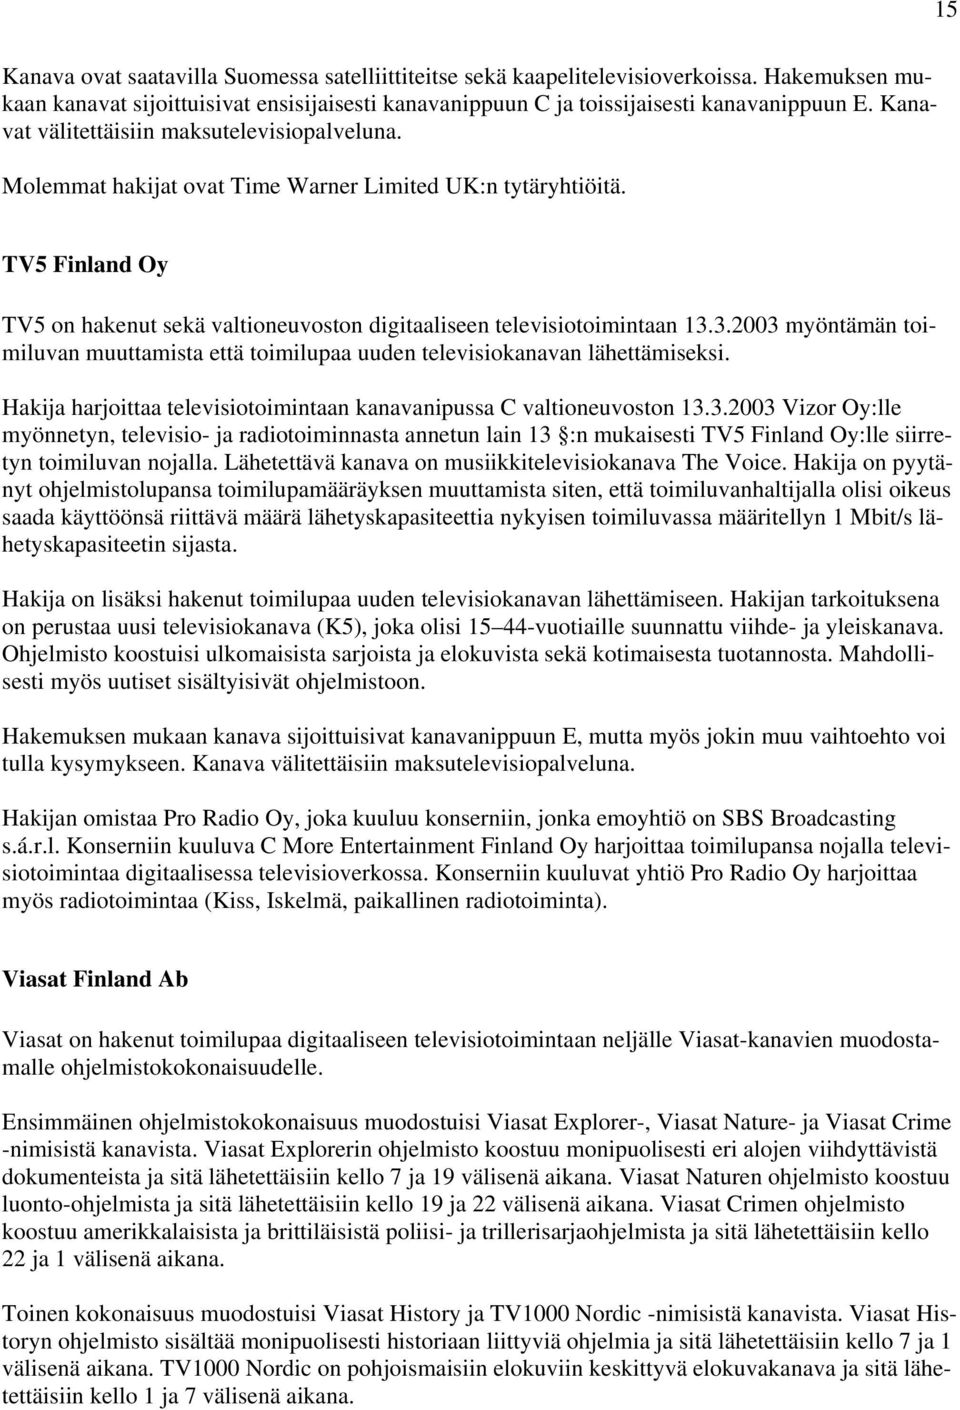 3.2003 myöntämän toimiluvan muuttamista että toimilupaa uuden televisiokanavan lähettämiseksi. Hakija harjoittaa televisiotoimintaan kanavanipussa C valtioneuvoston 13.3.2003 Vizor Oy:lle myönnetyn, televisio- ja radiotoiminnasta annetun lain 13 :n mukaisesti TV5 Finland Oy:lle siirretyn toimiluvan nojalla.